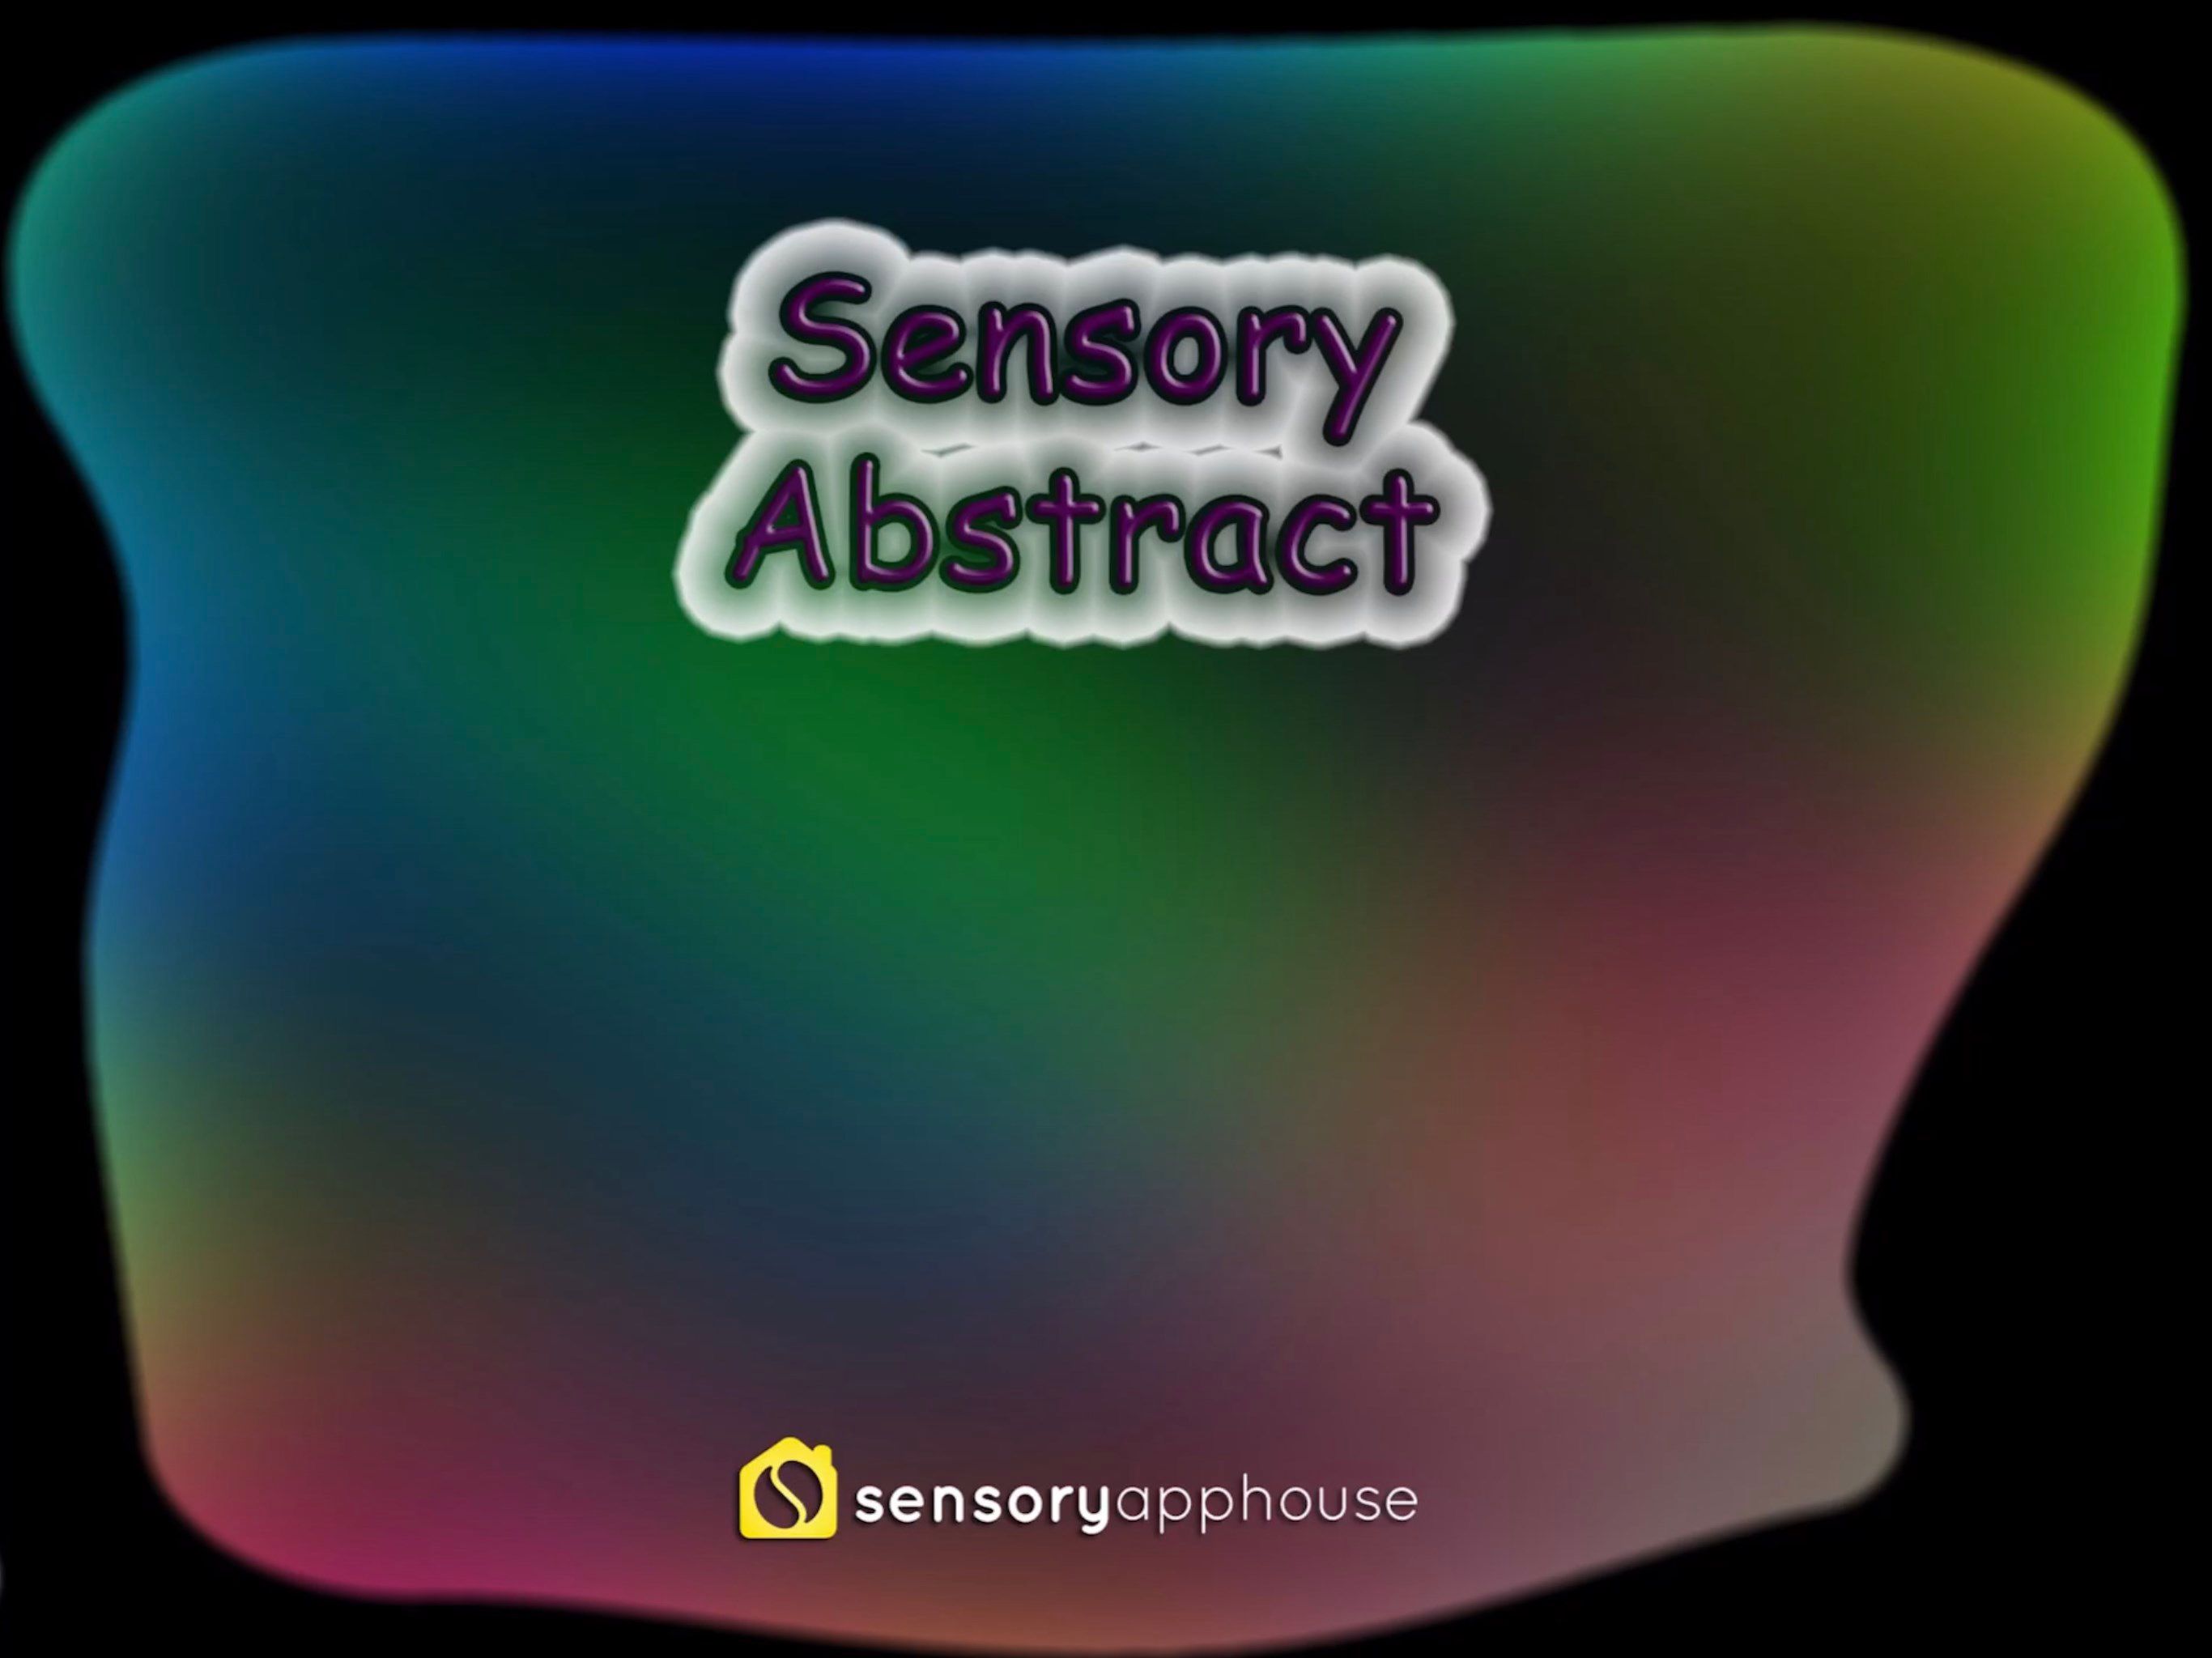 Sensory Abstract#1 Display